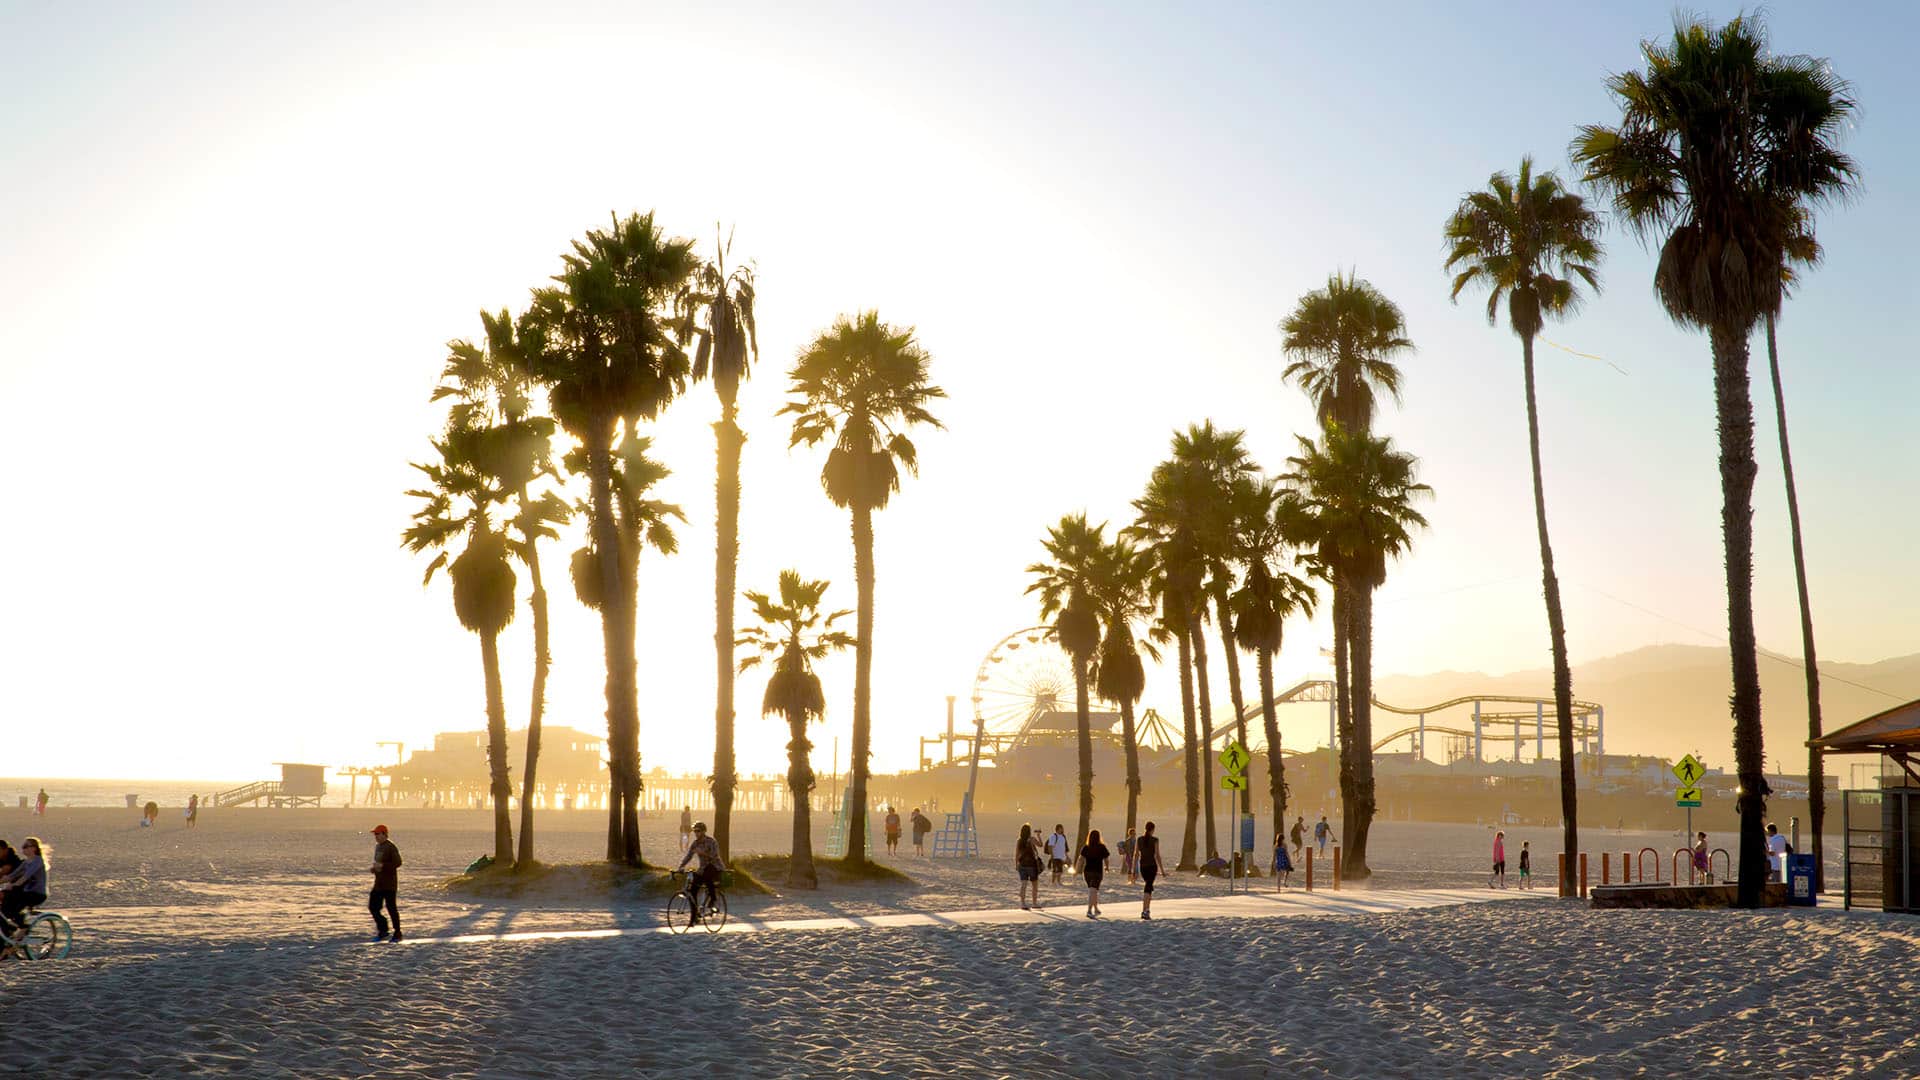 Venice Beach in California